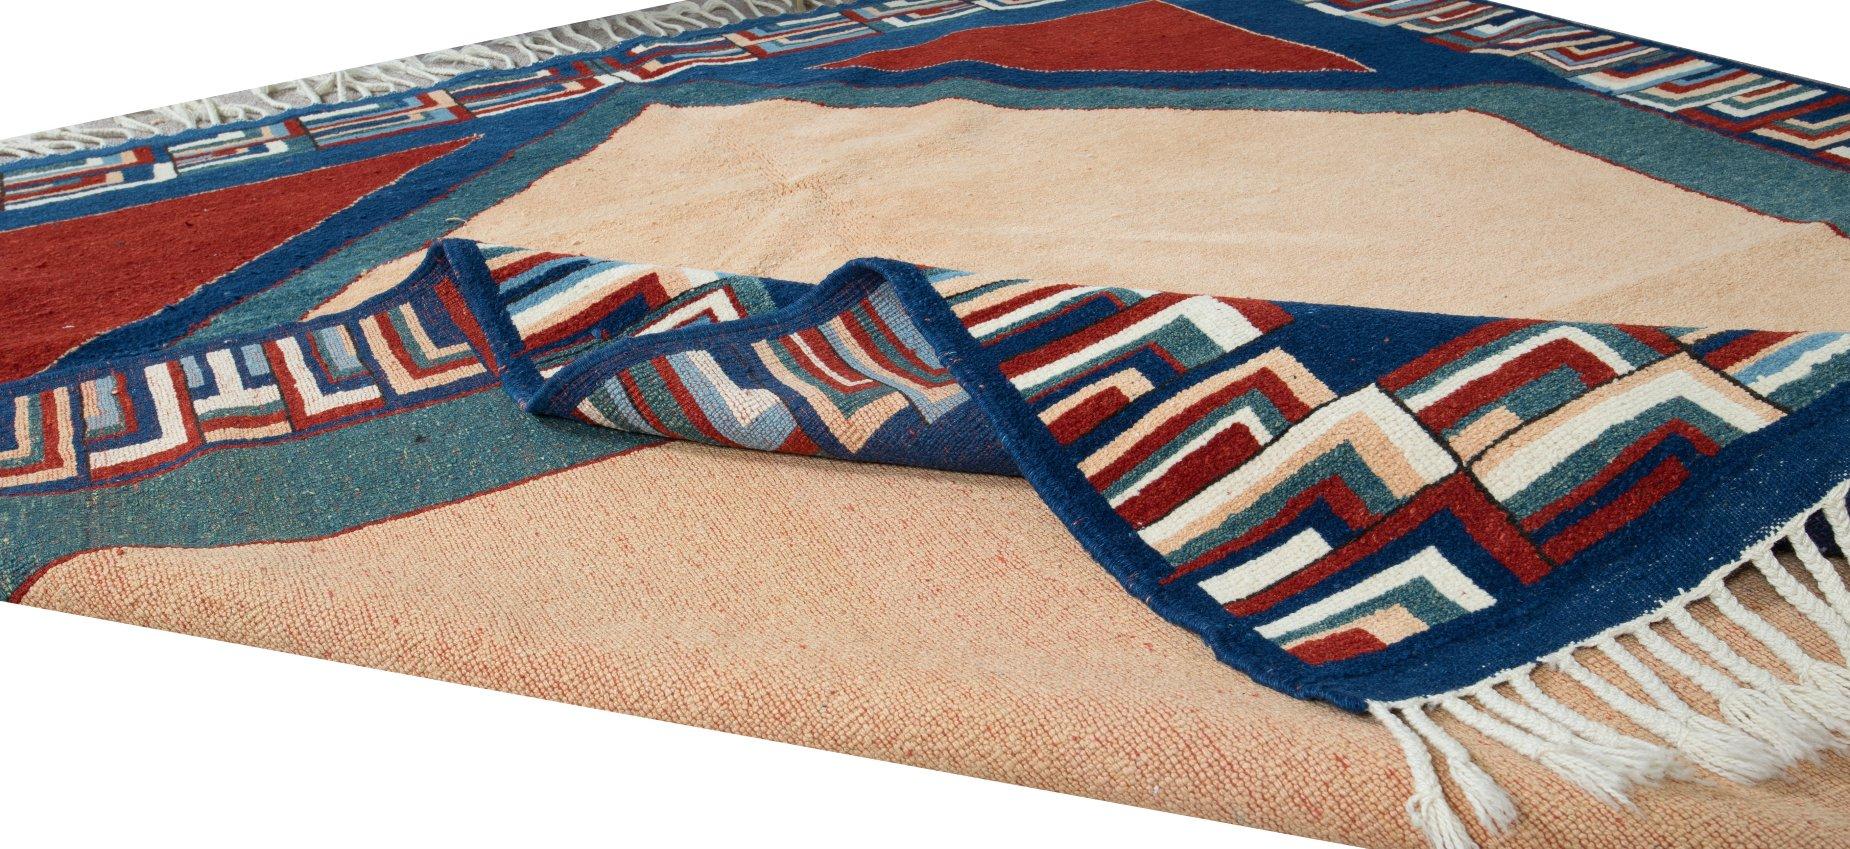 6.2x7.2 Ft Contemporary Türkischer Teppich. 100% Wolle, Natürliche Farbstoffe, Modern Carpet (Stammeskunst) im Angebot